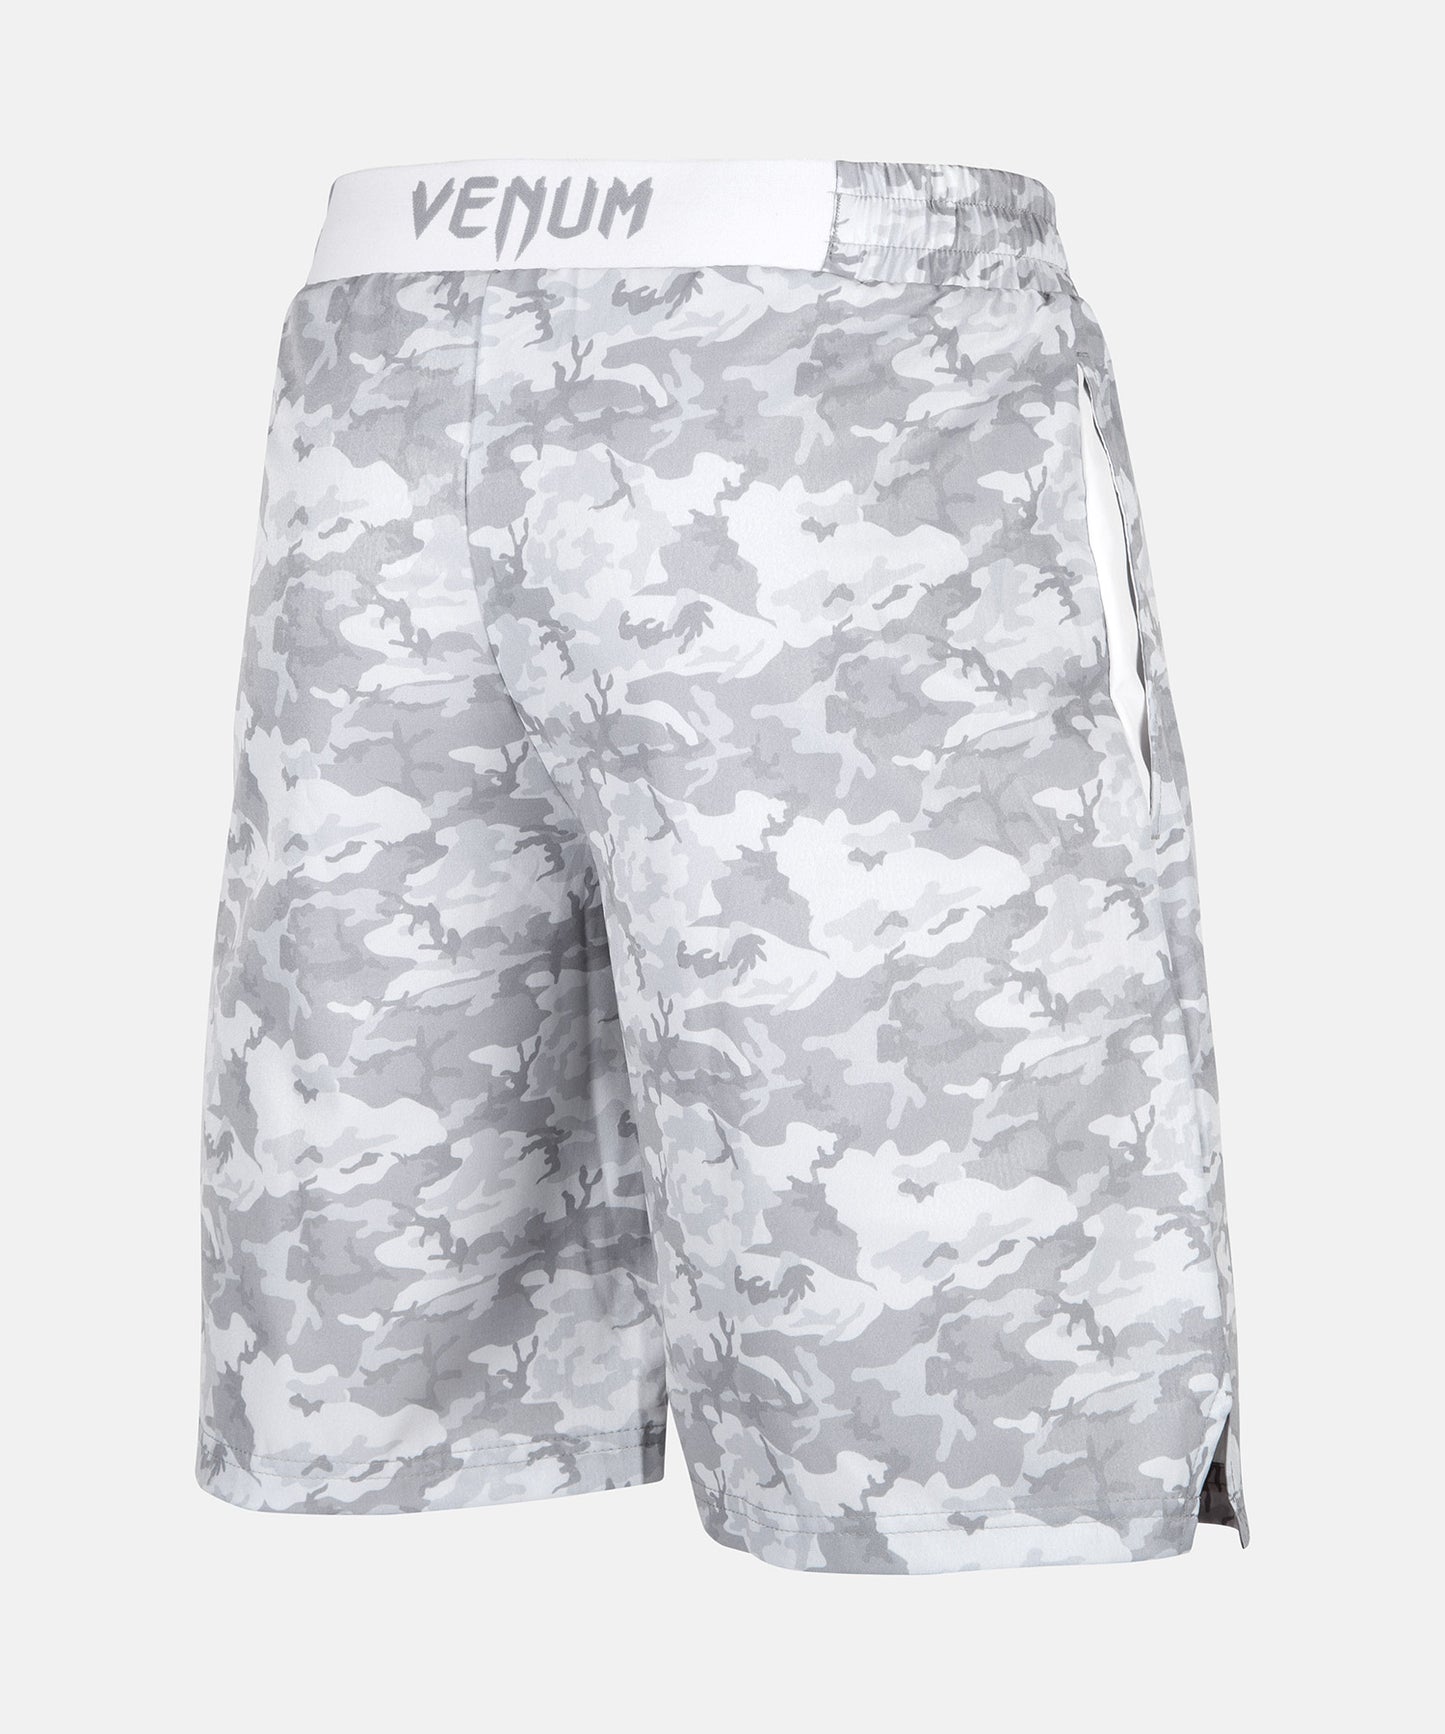 Pantaloncini da Allenamento Classic Venum - White/Camo